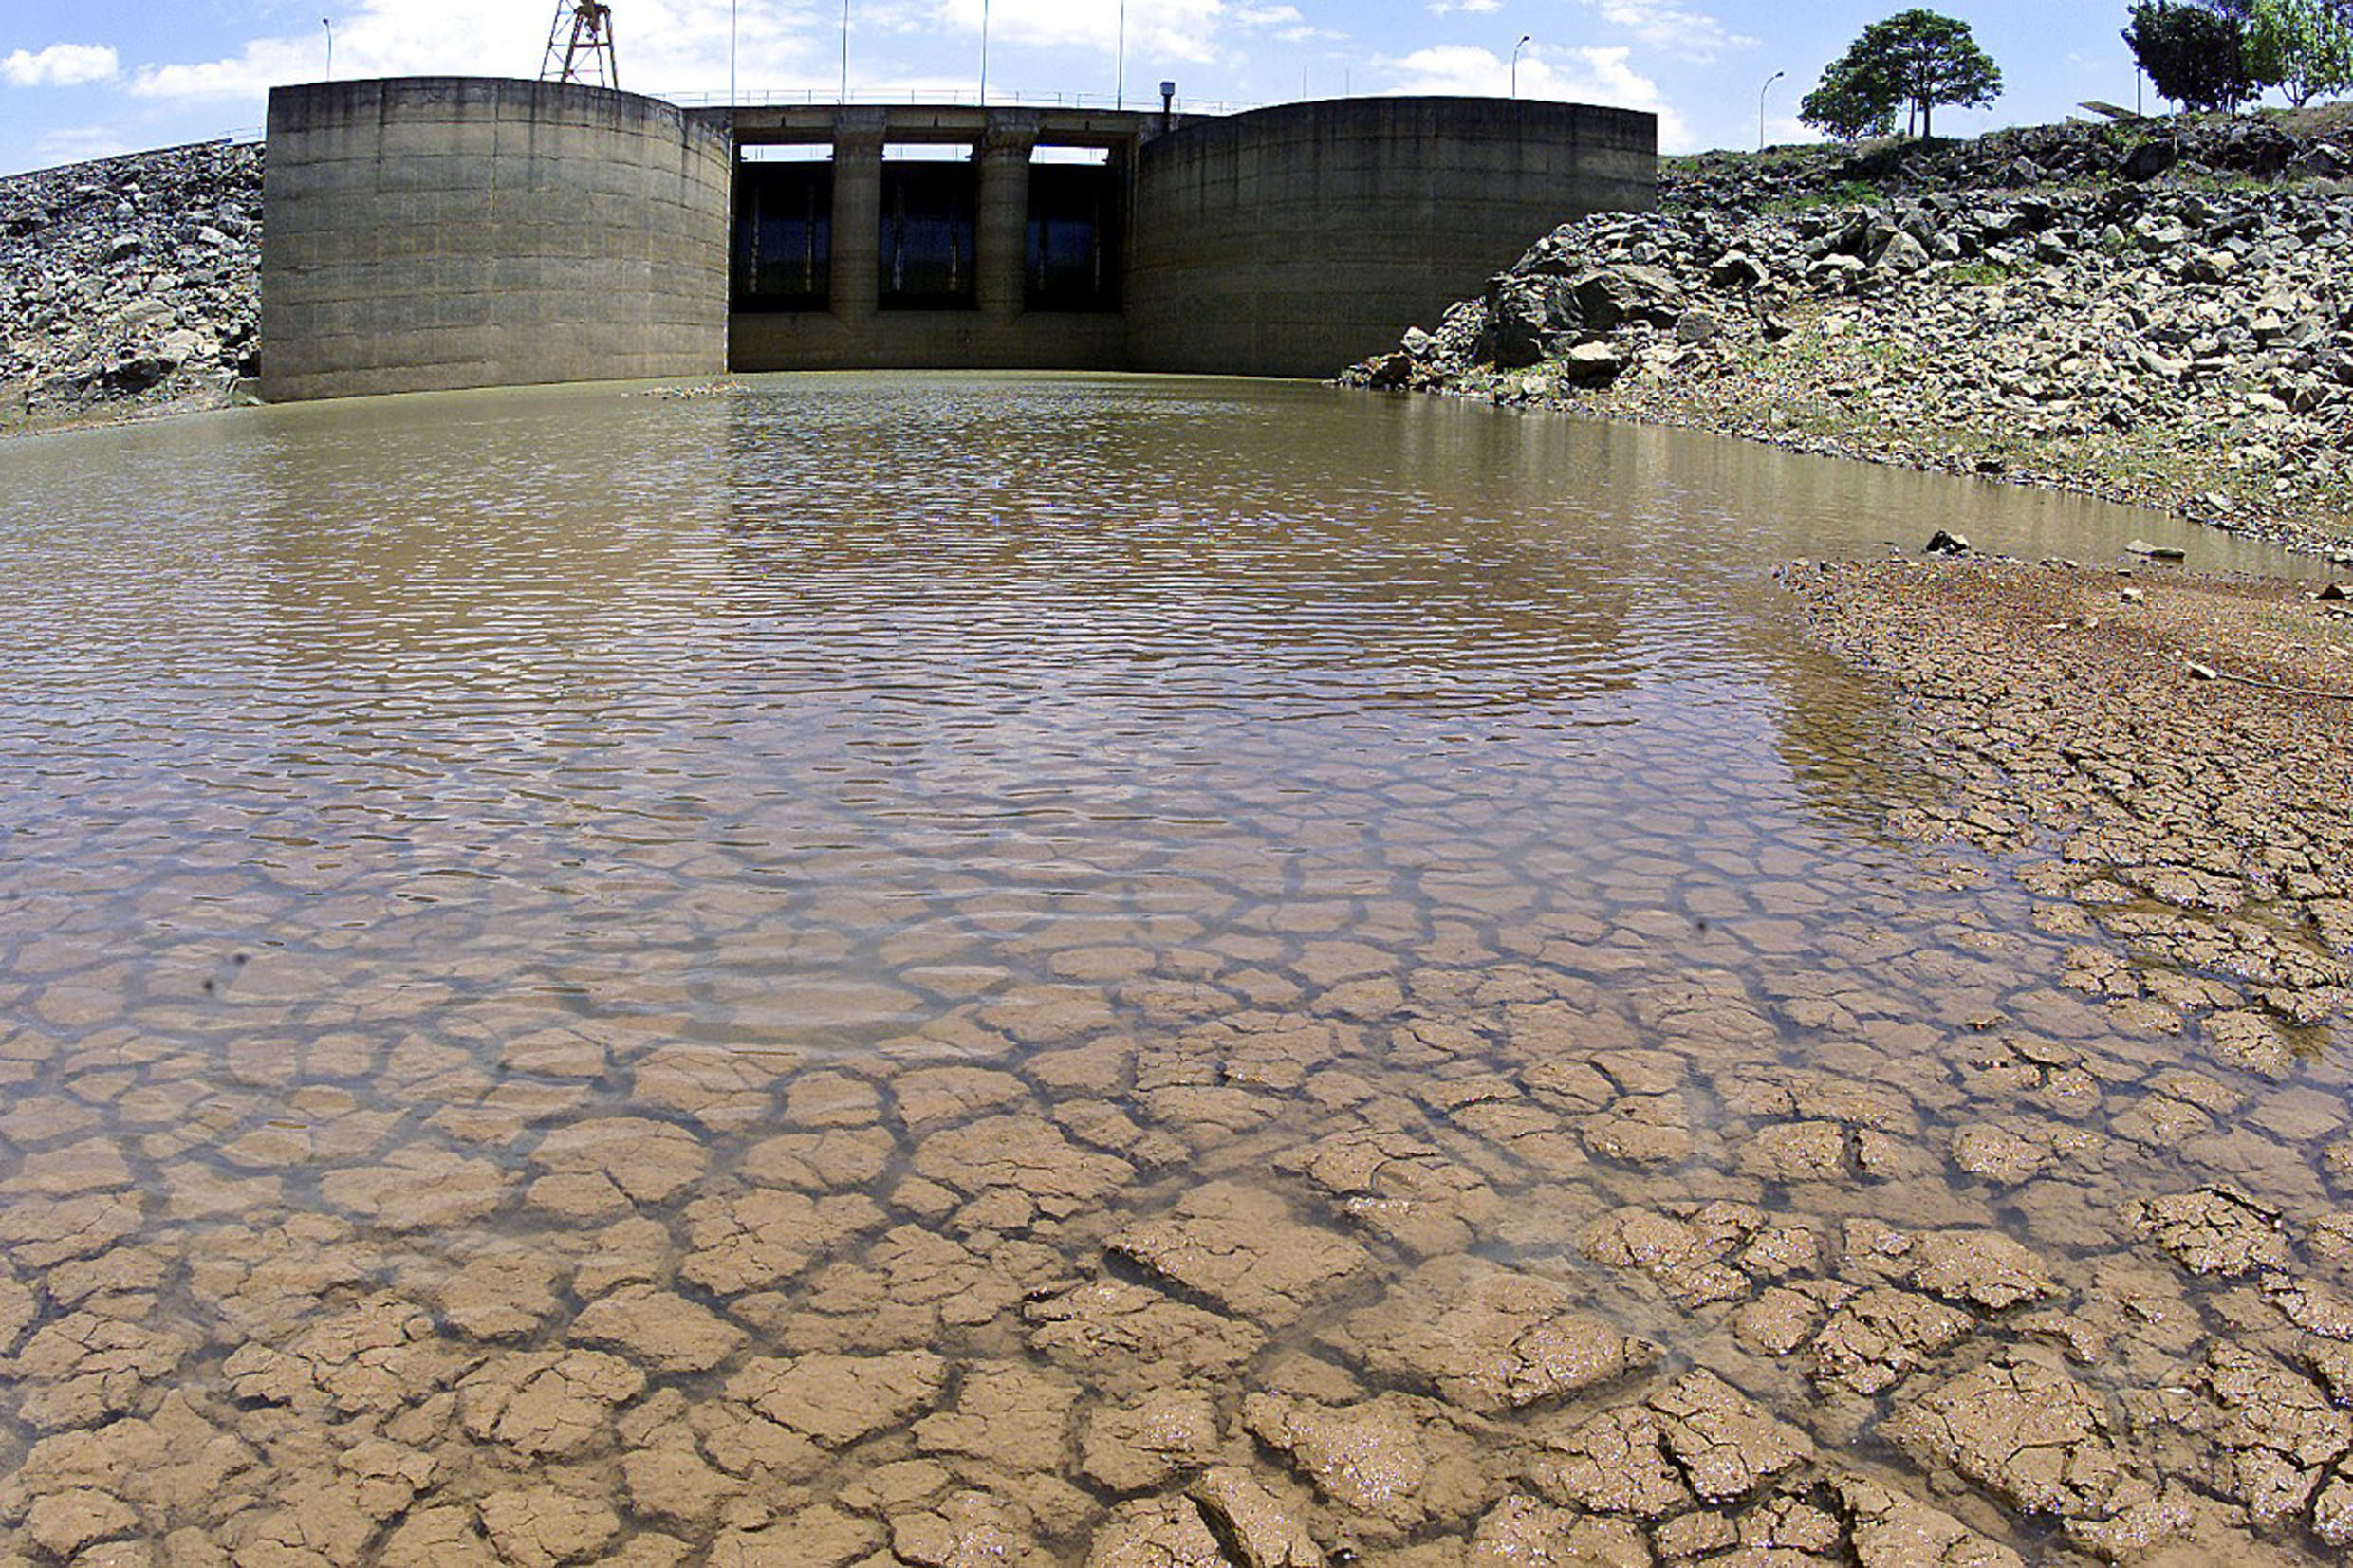 Sistema Cantareira em São Paulo durante a crise hídrica de 2021: previsão de secas mais intensas e prolongadas que terão impacto no geração de energia (Foto: Agência Brasil)